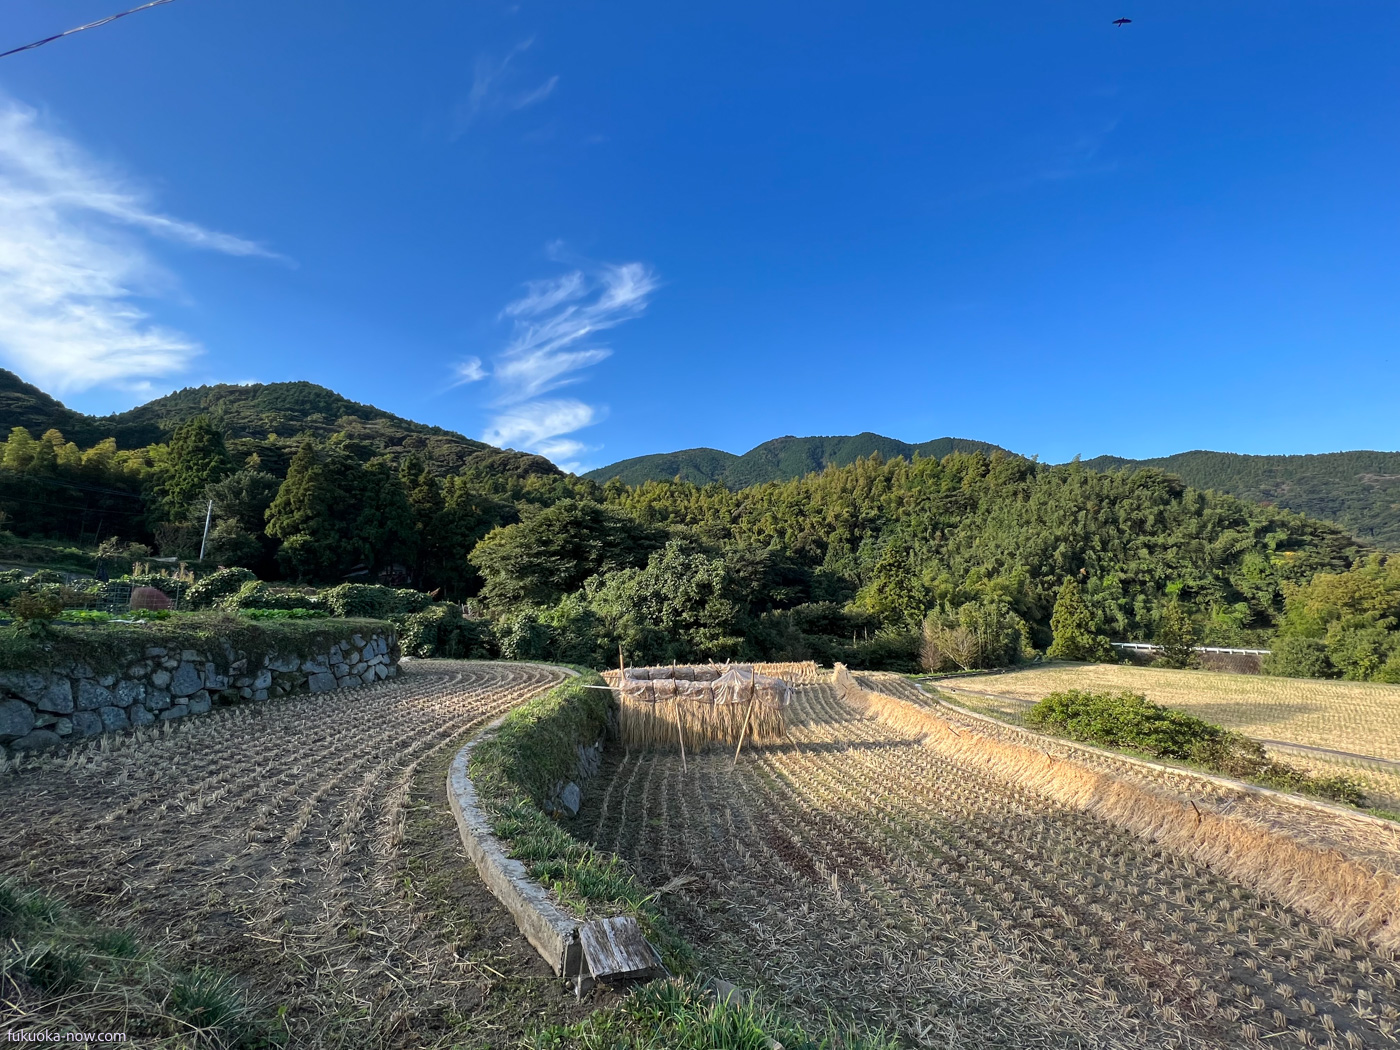 Field in Itoshima, 糸島の田園風景